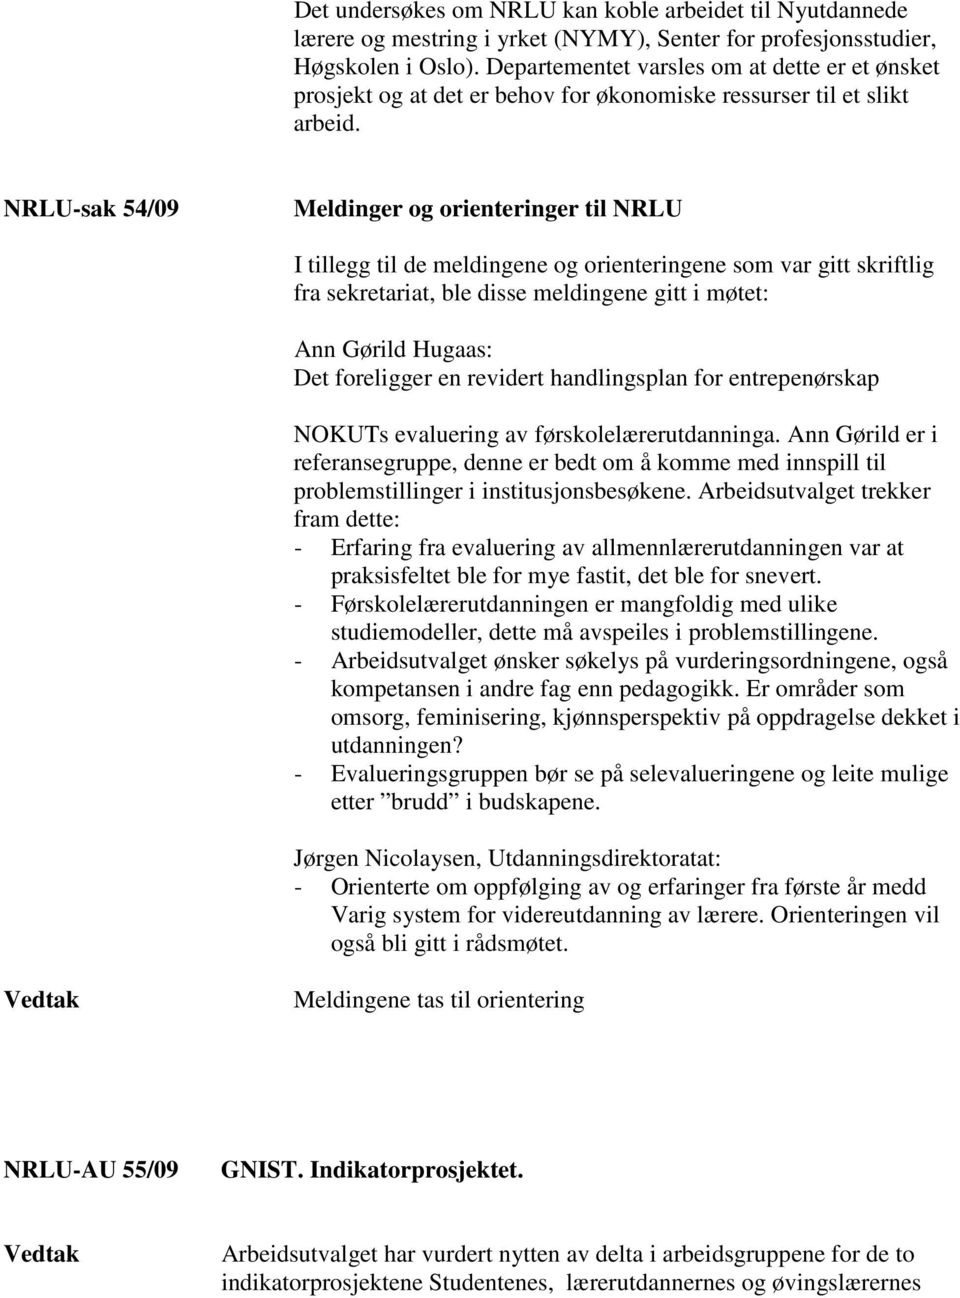 NRLU-sak 54/09 Meldinger og orienteringer til NRLU I tillegg til de meldingene og orienteringene som var gitt skriftlig fra sekretariat, ble disse meldingene gitt i møtet: Ann Gørild Hugaas: Det